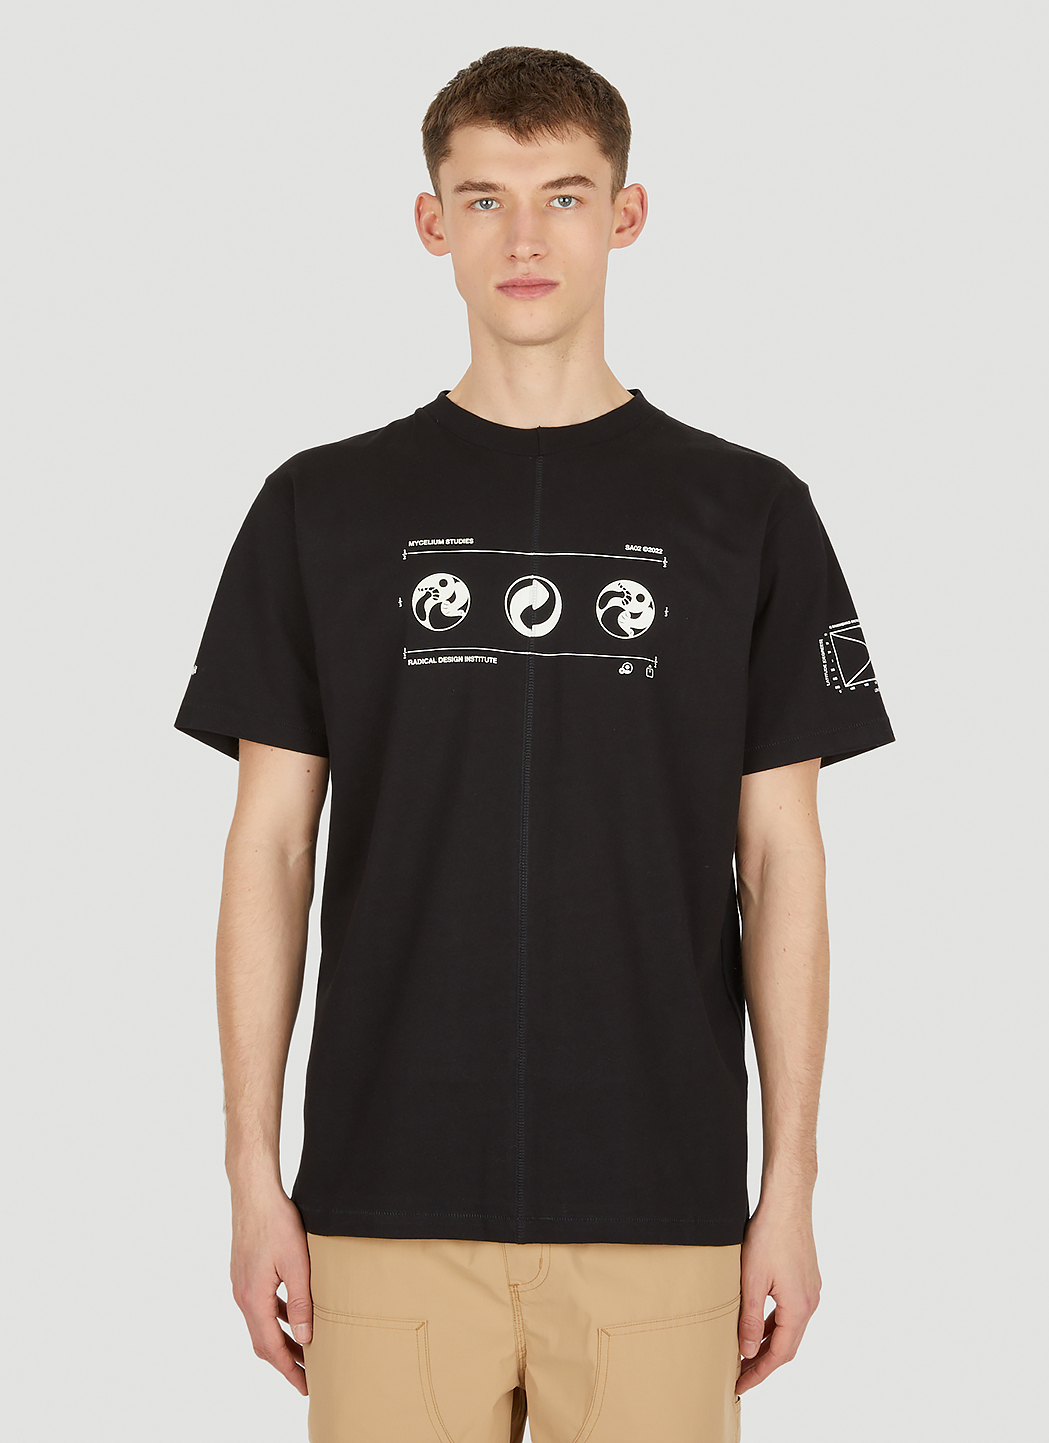 Upcycled Mycelium Studios T-Shirt